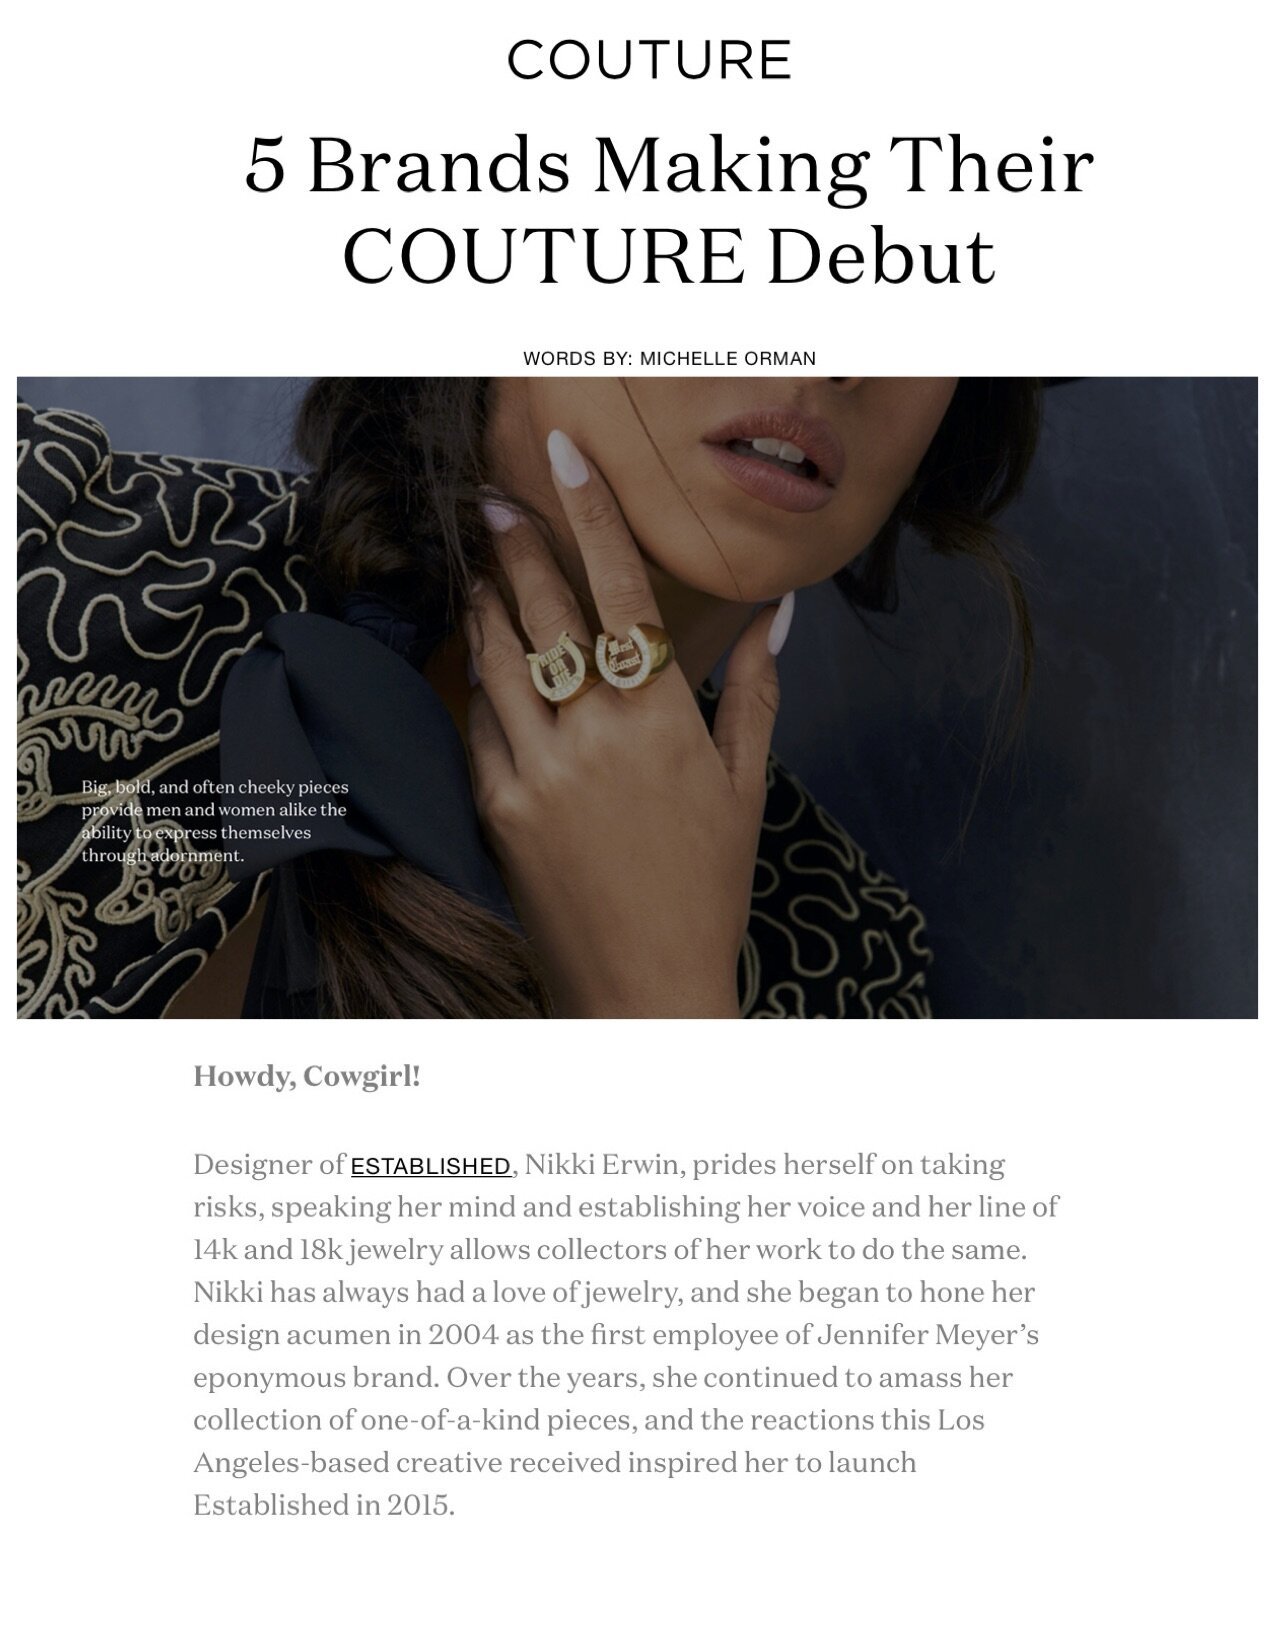 Established on Couture.com, July 2021